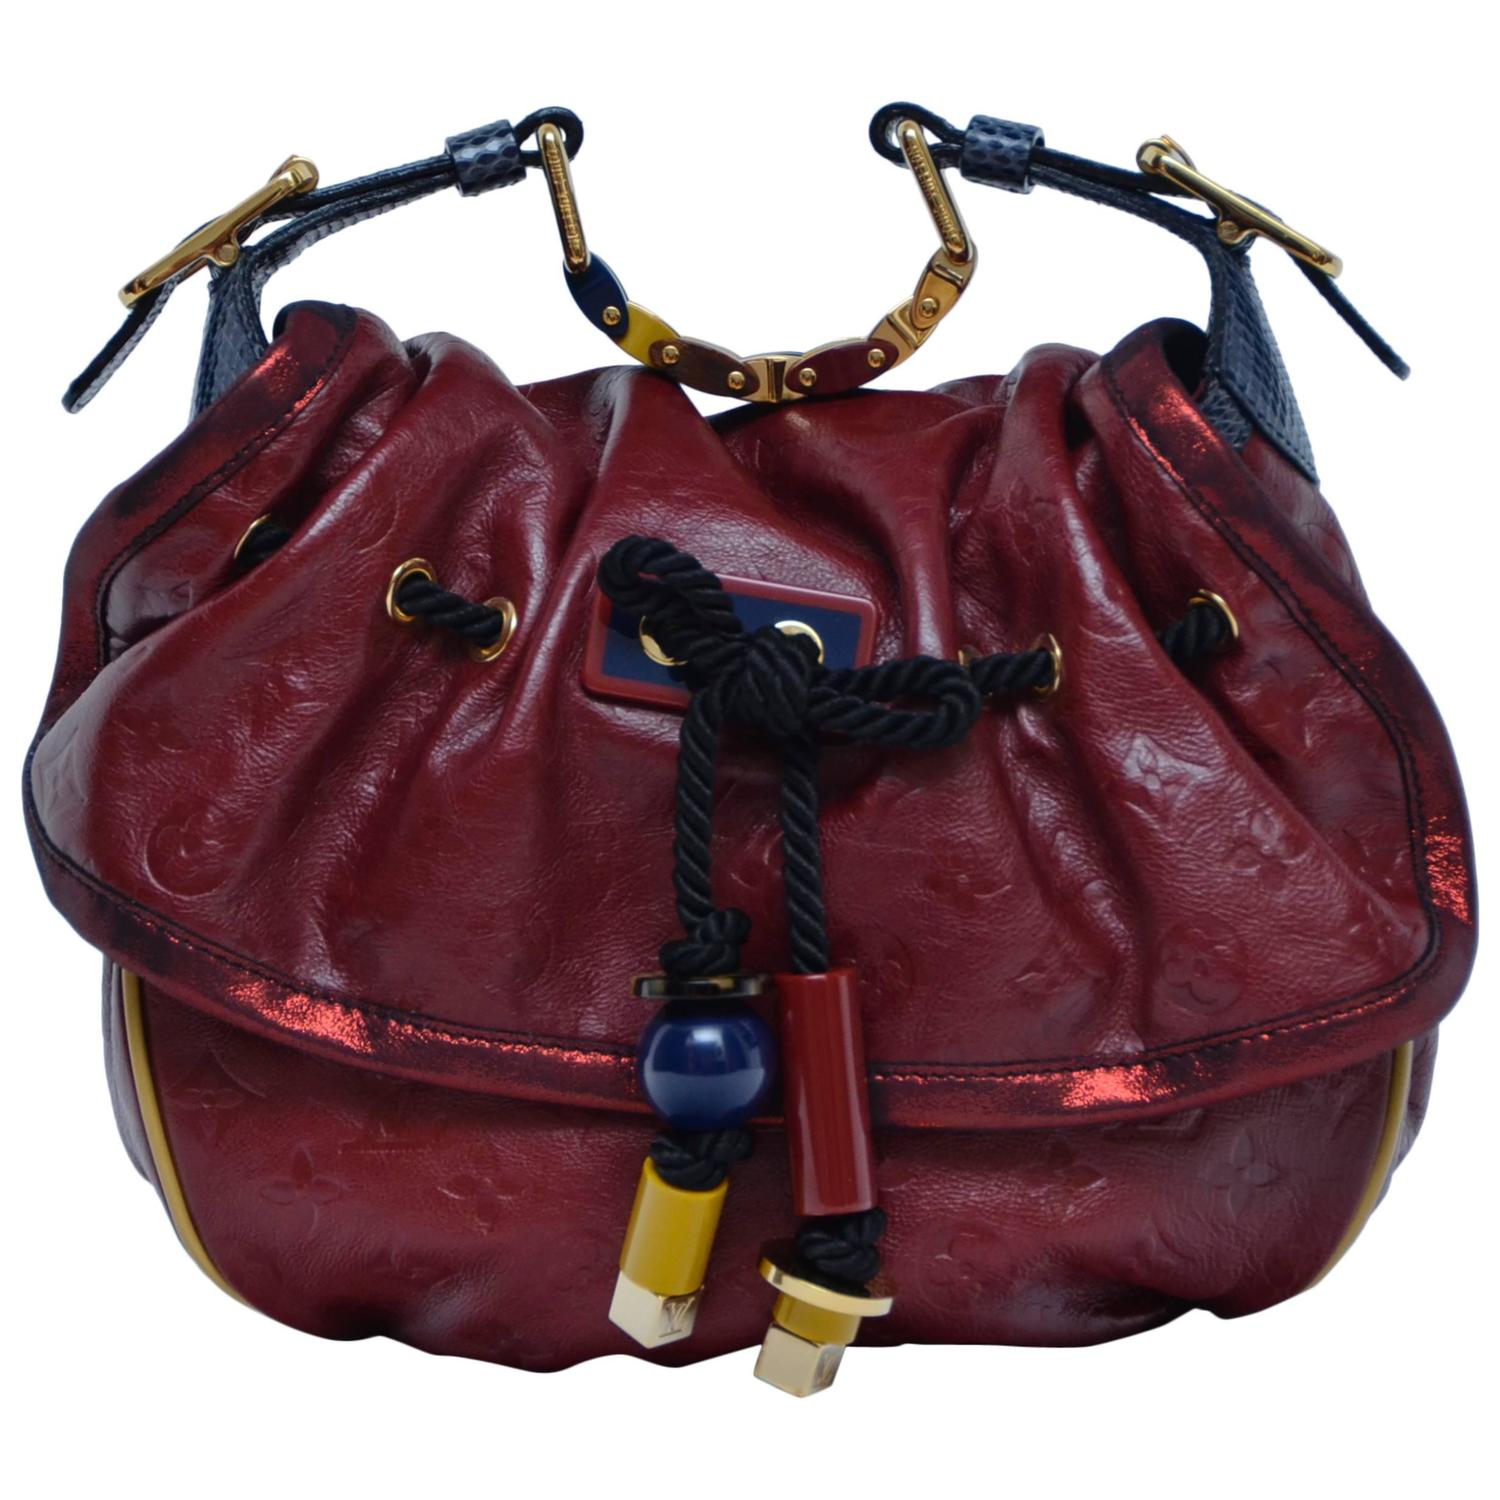 Louis Vuitton KALAHARI PM 2009 Collection Handbag Mint For Sale at 1stdibs